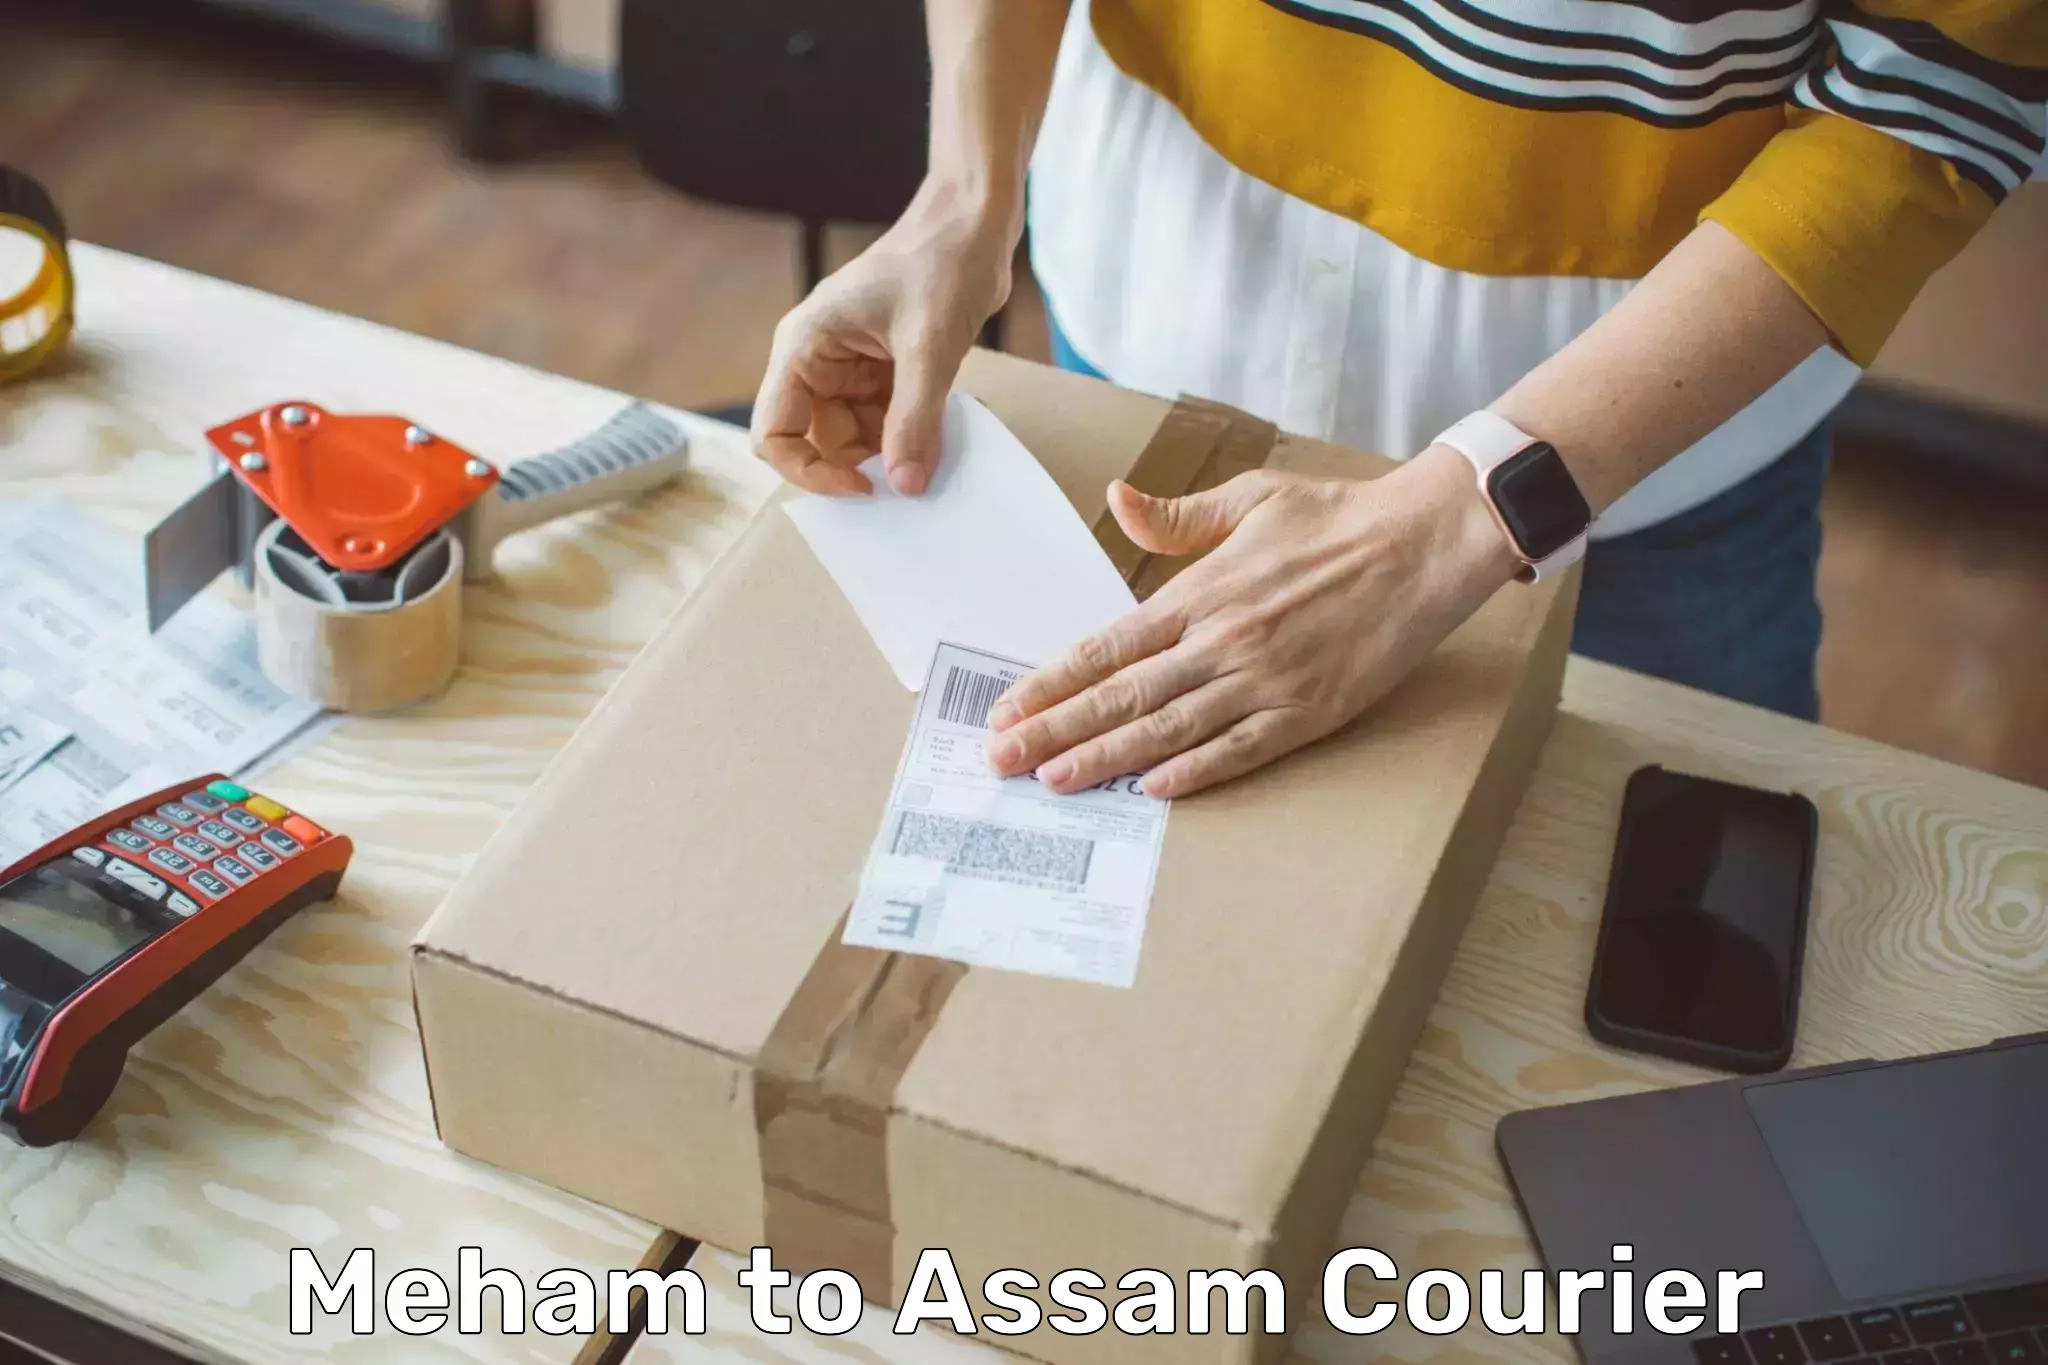 Bulk shipment Meham to Assam